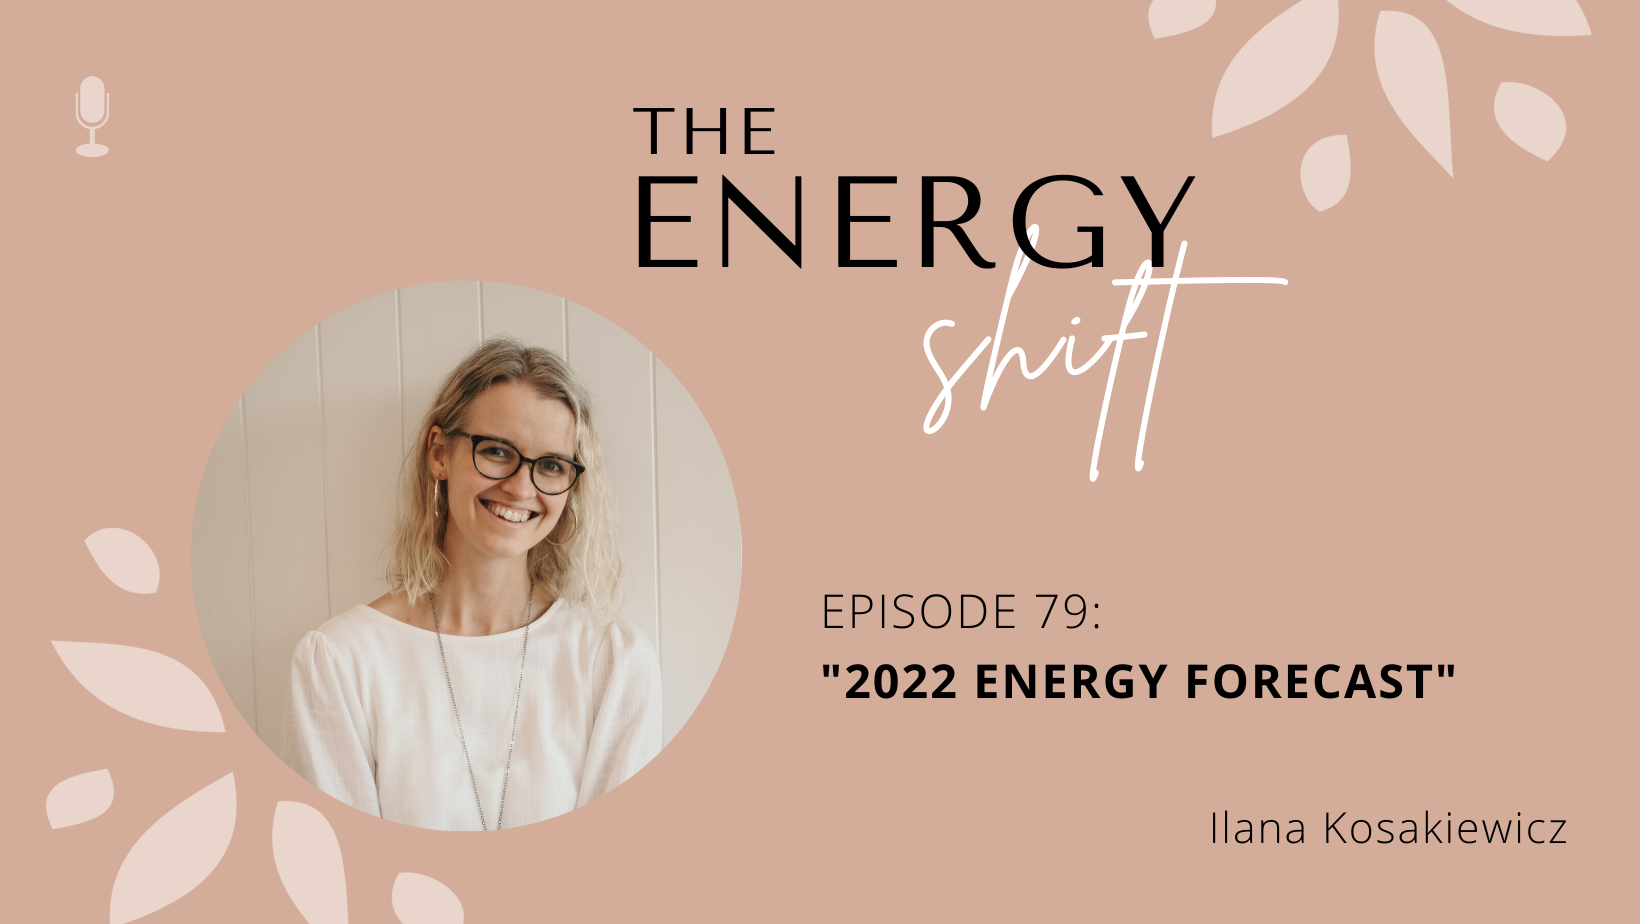 Episode 79: 2022 Energy Forecast